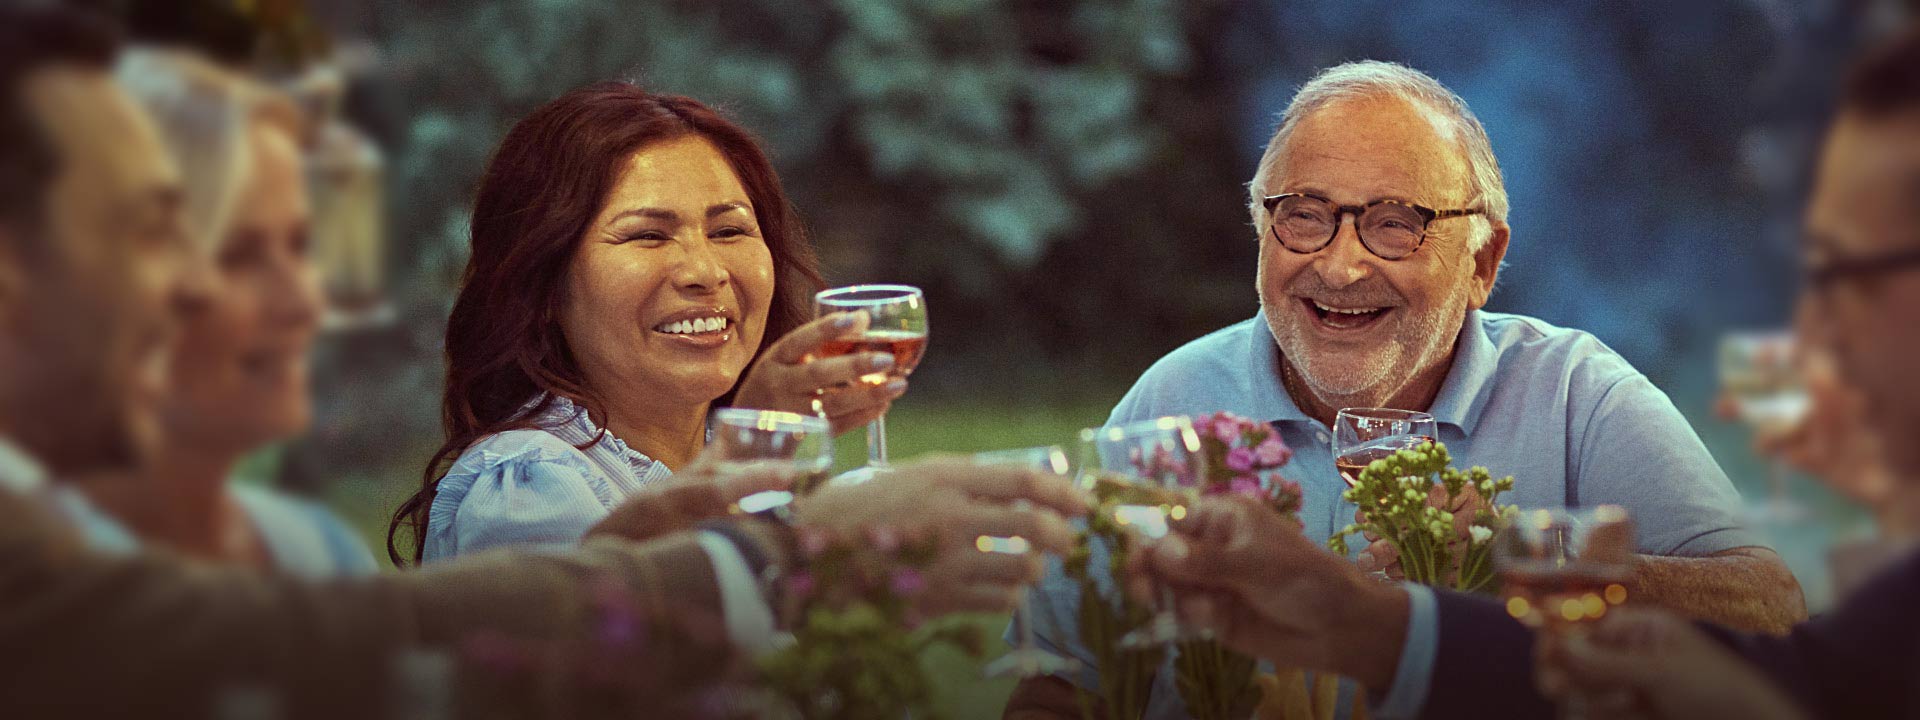 La imagen muestra un hombre feliz con otras personas en una cena